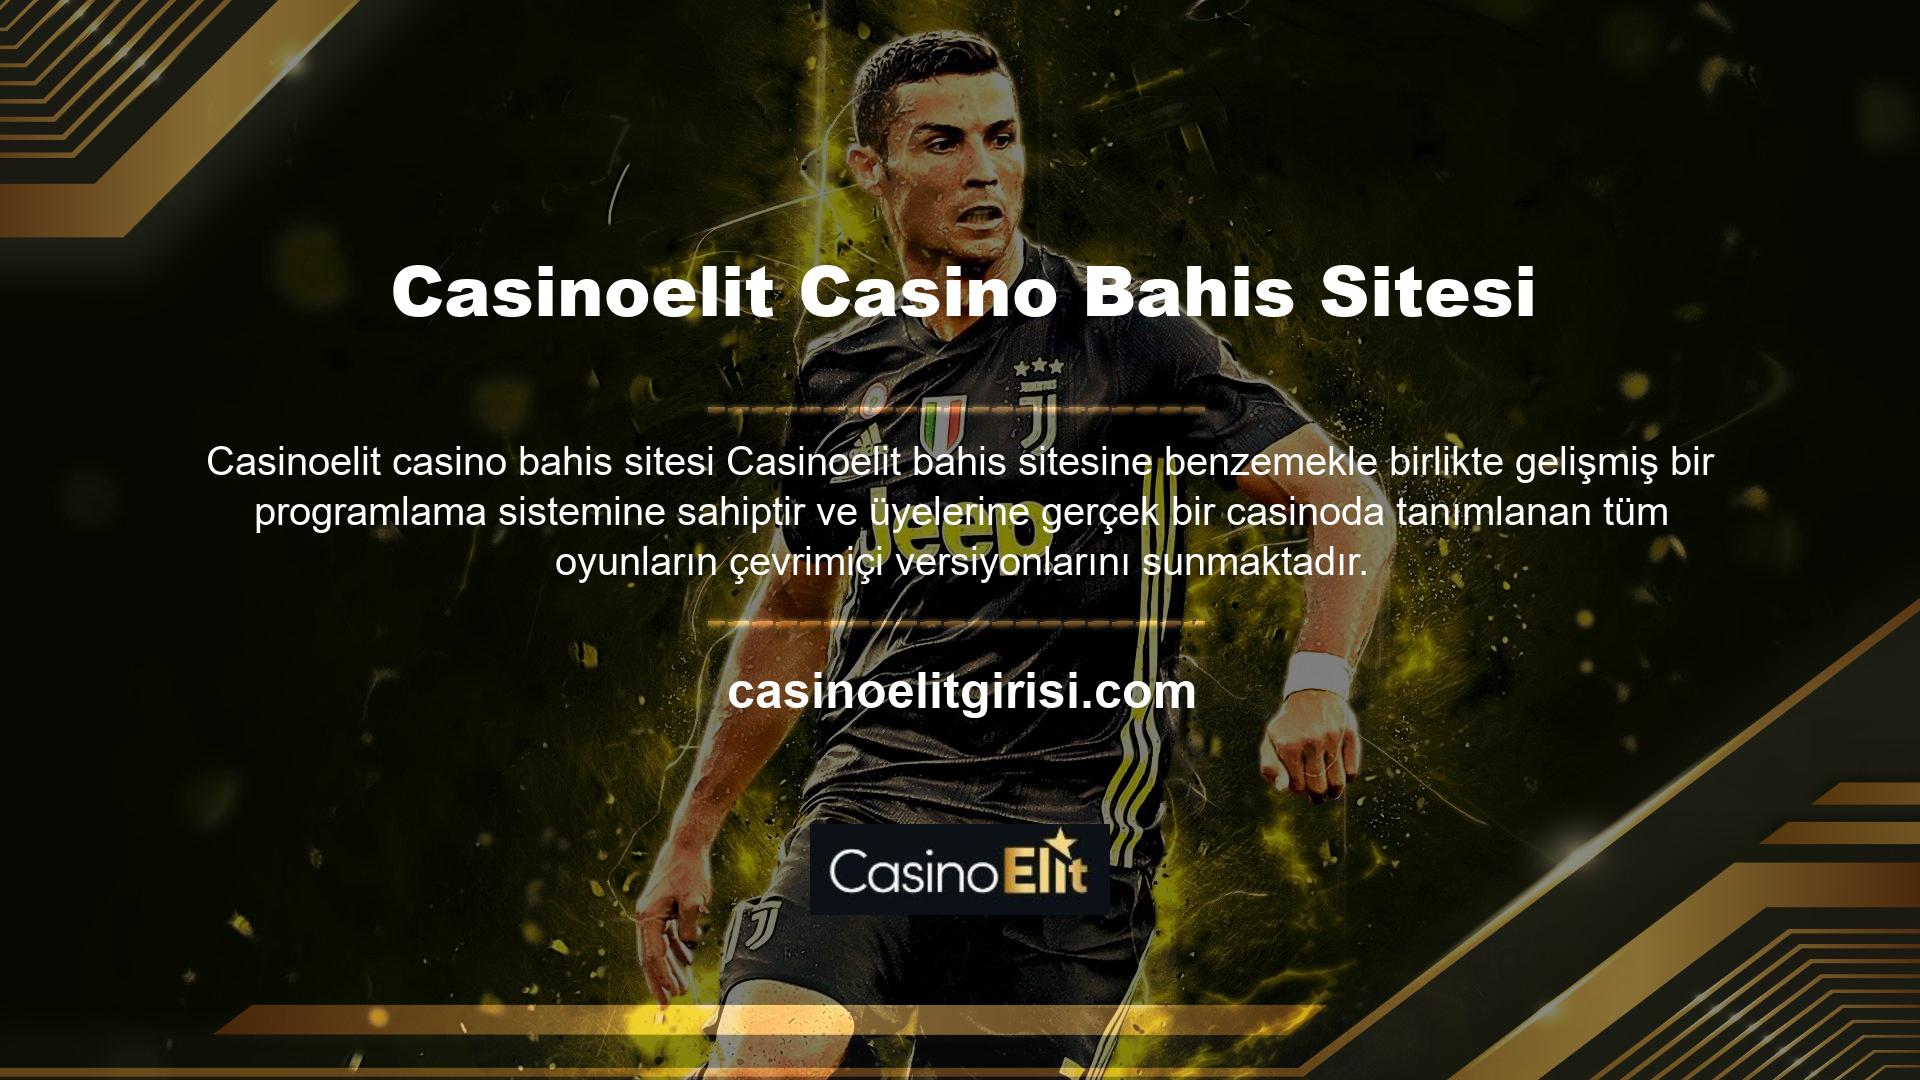 Online casino alanında geliştirilen en gelişmiş sistem aynı zamanda Casinoelit casino bahis sitesinde üyelerin gerçek kullanıcılarla canlı casino oyunları oynamasına da olanak sağlamaktadır